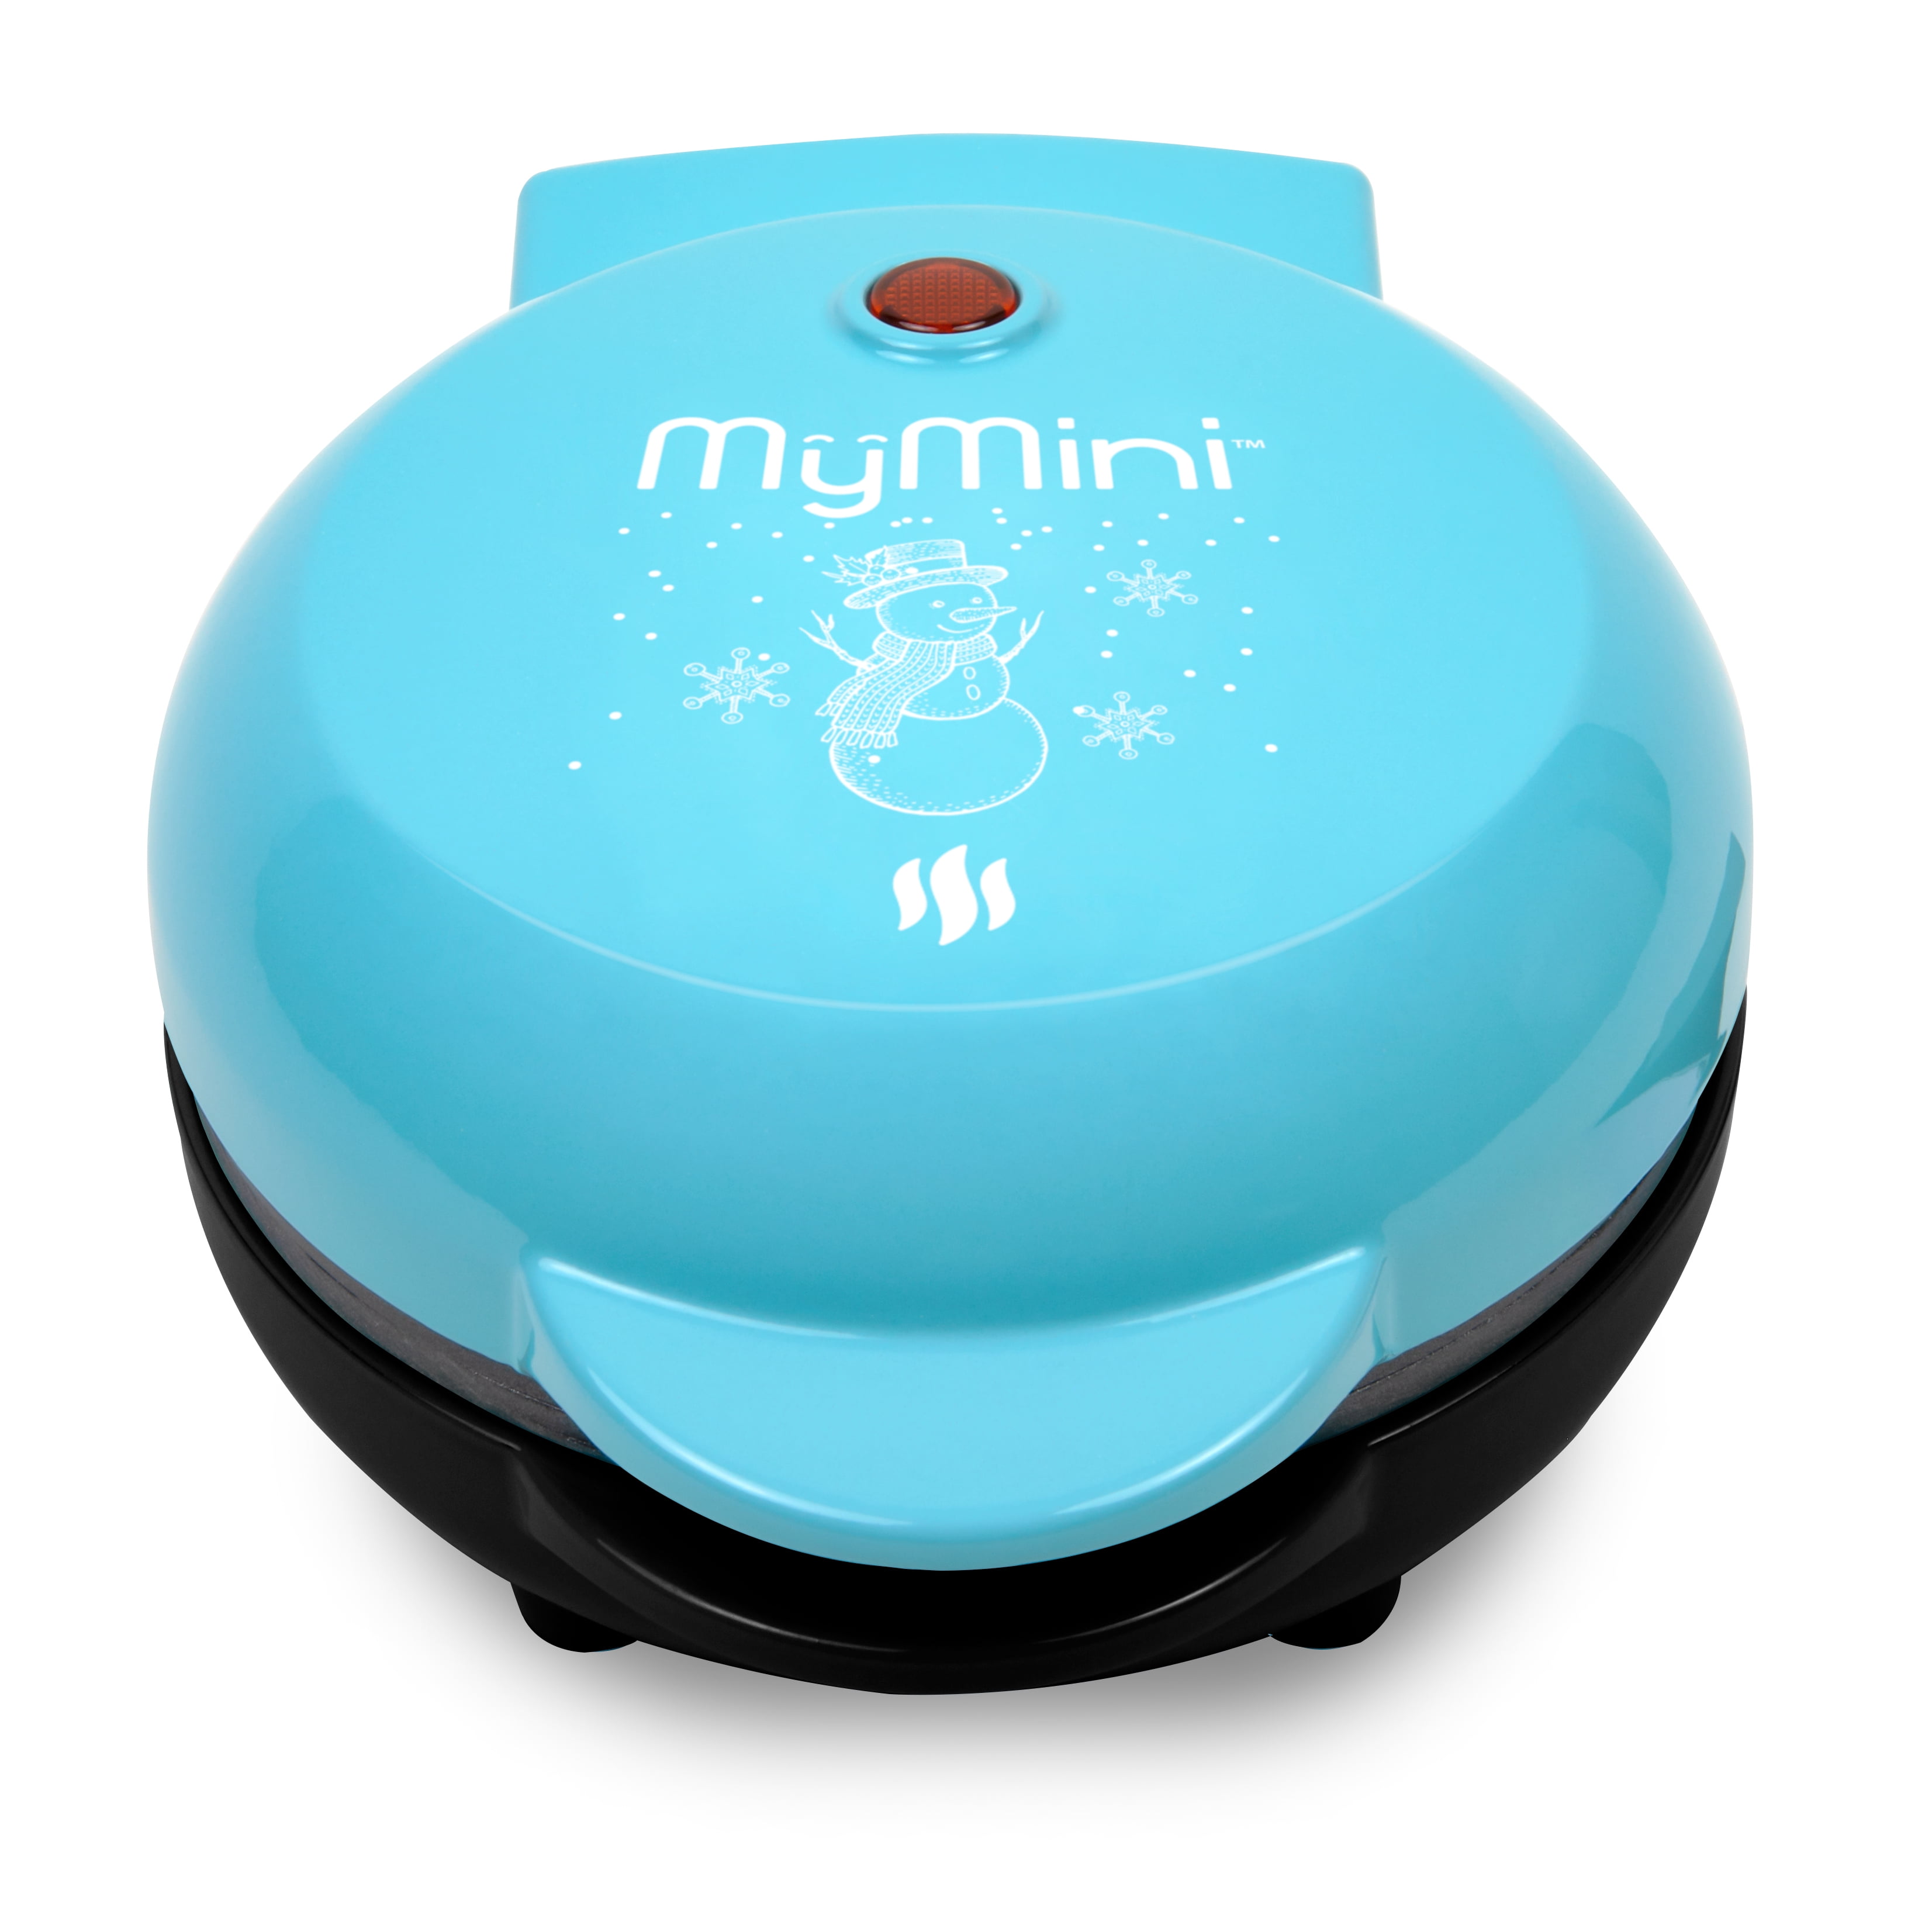 MyMini My Mini Snowman Waffle Maker, Blue